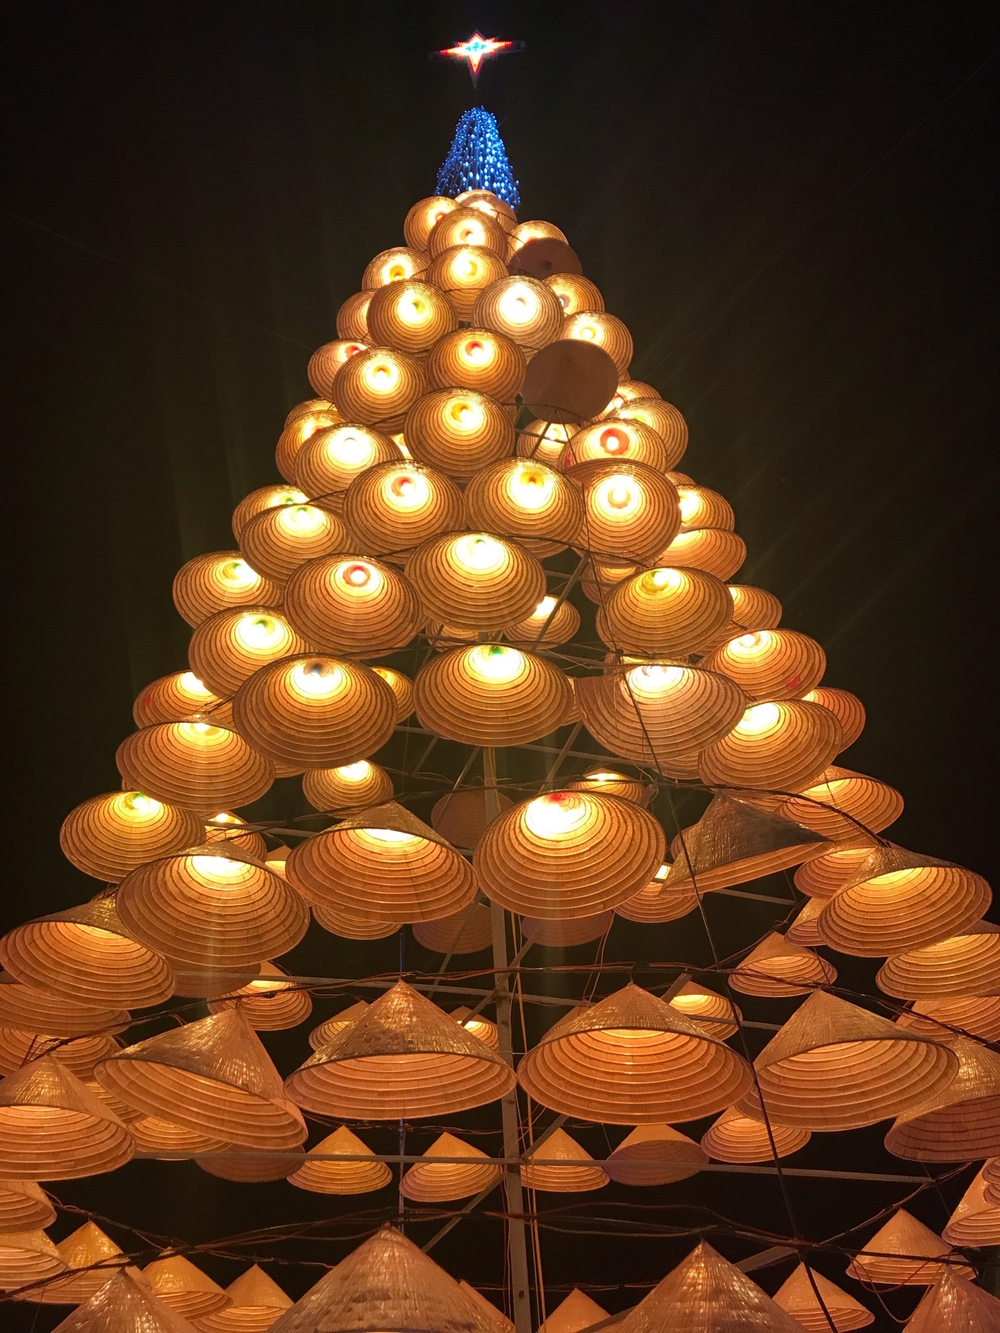 
Cây thông được làm từ nón lá mang đậm hồn dân tộc Việt.